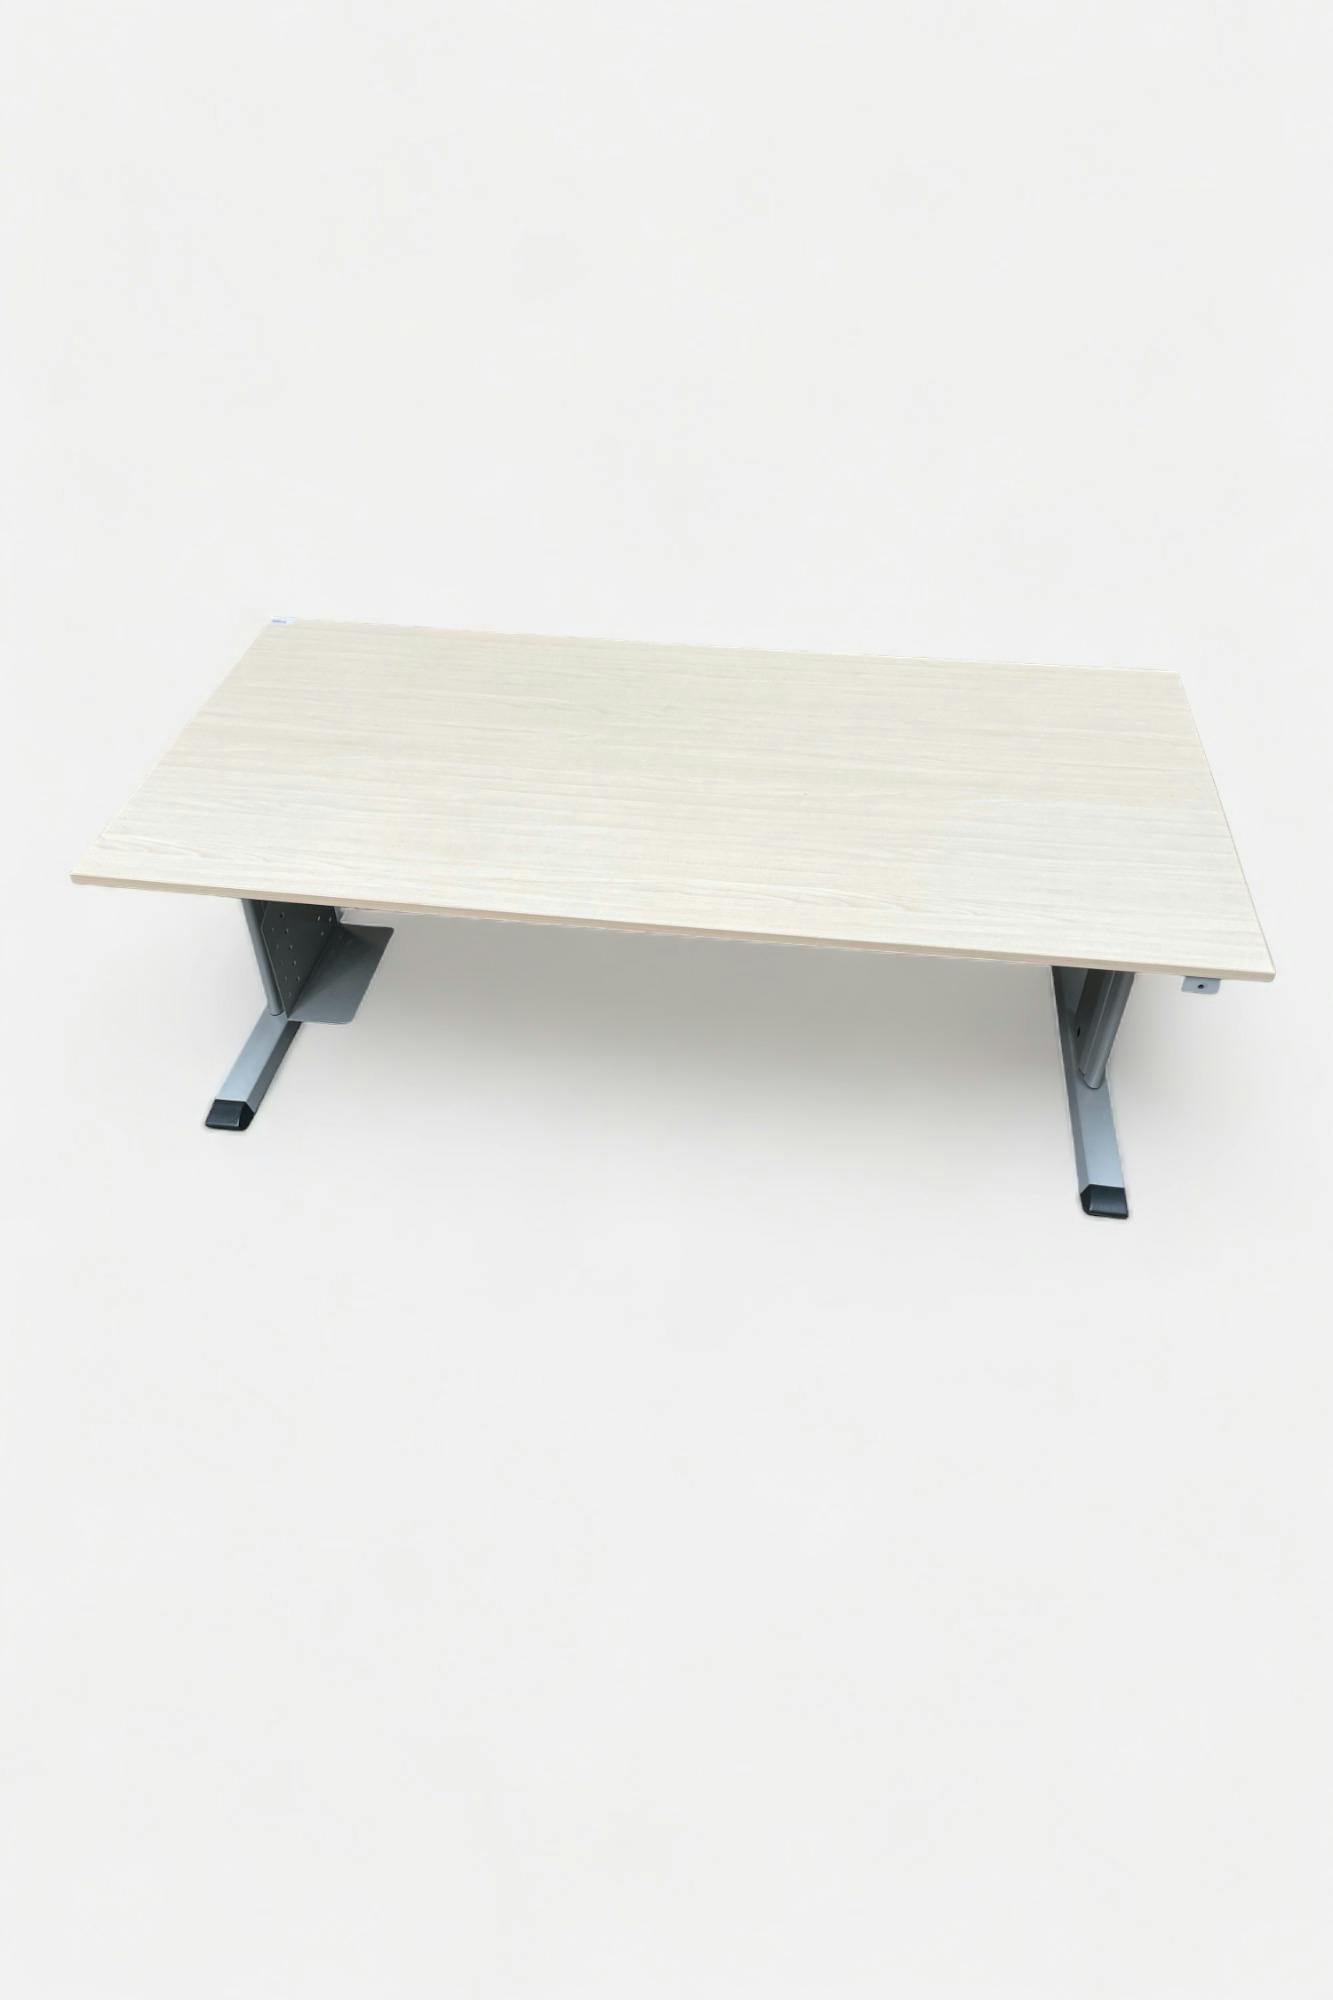 PAMI Wood Print bureaus met 2 grijze poten (in hoogte verstelbaar) - Relieve Furniture